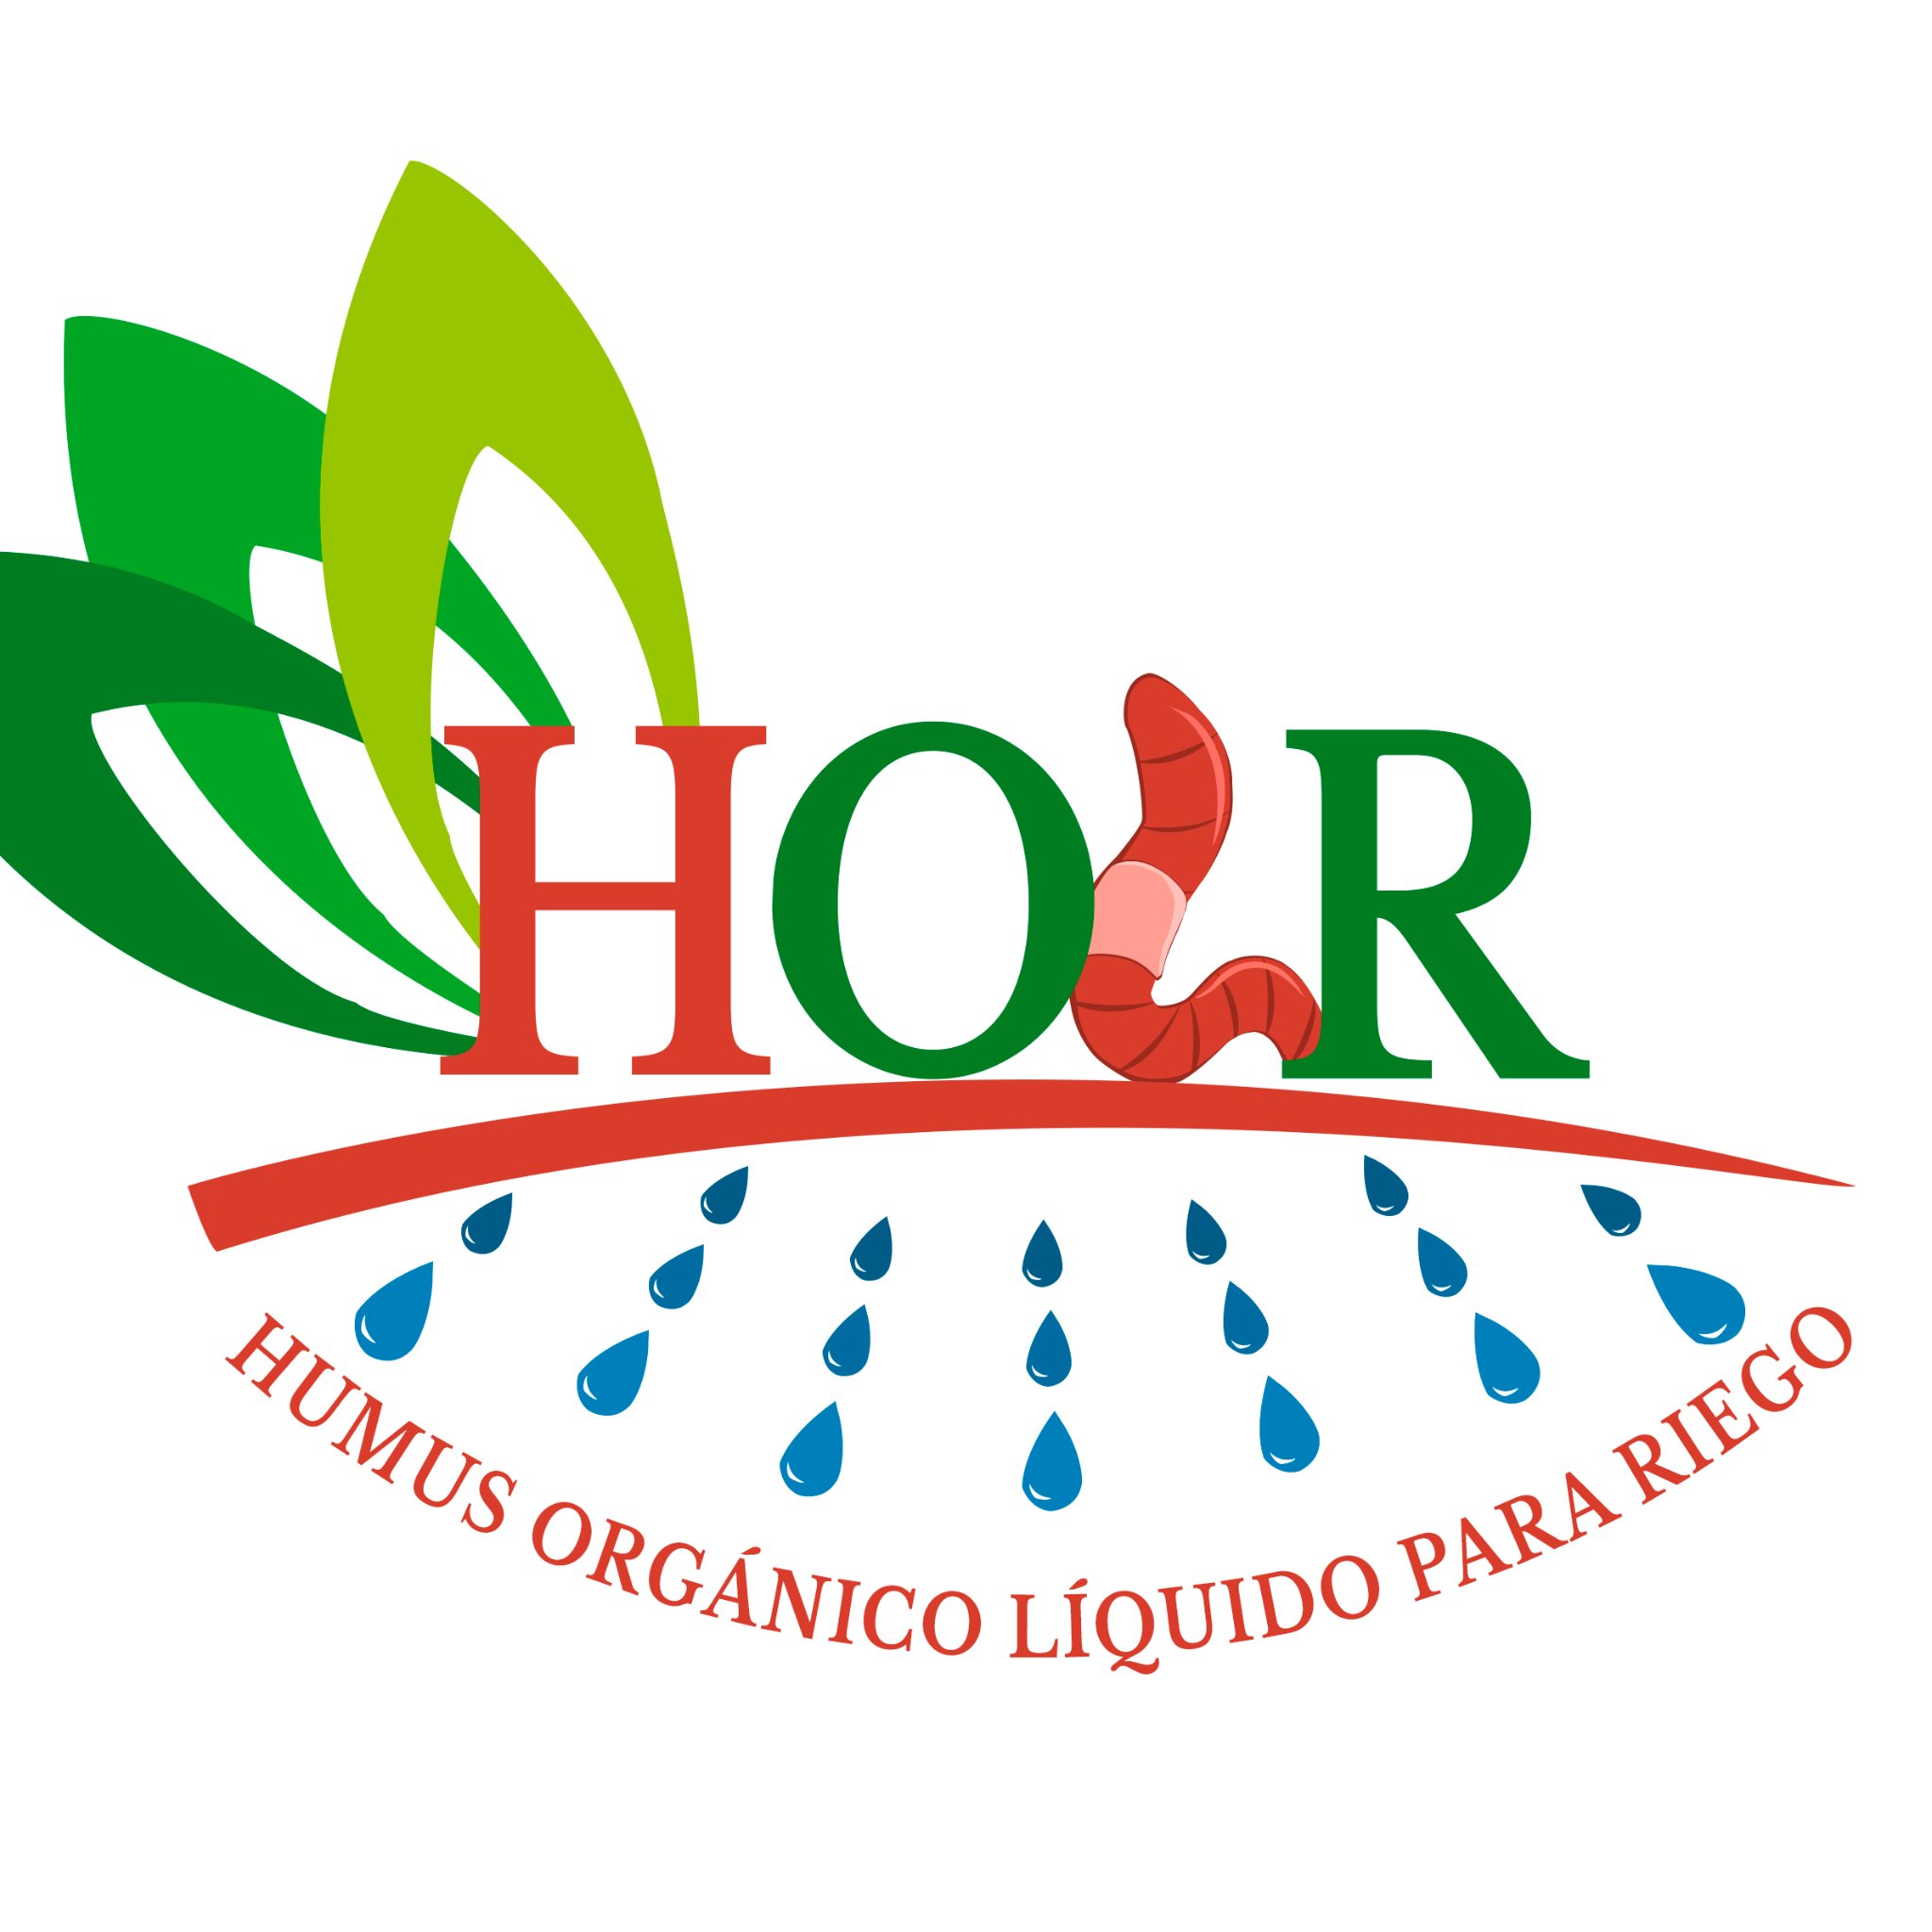 HOLR es un acondicionador orgánico de suelos en forma líquida. Elaborado con materia primas completamente orgánica.